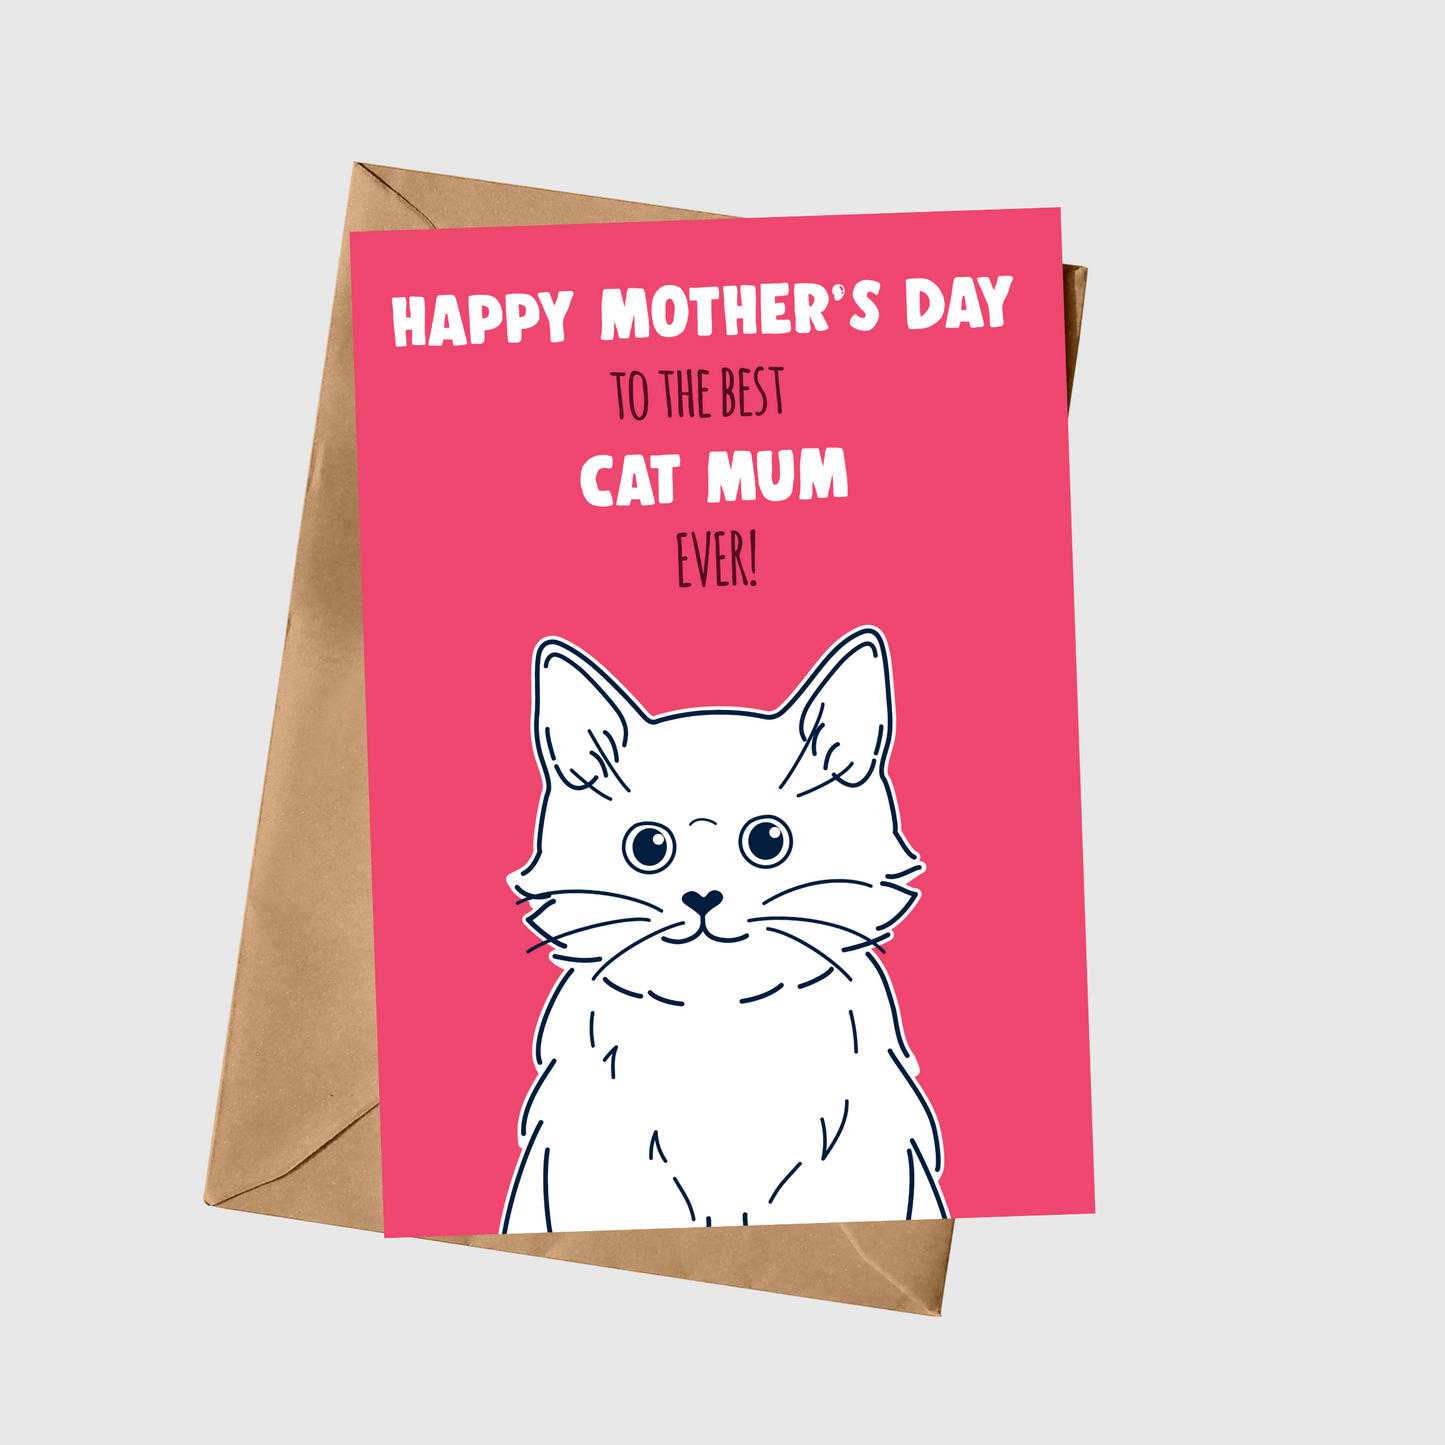 To The Best Cat Mum Ever!